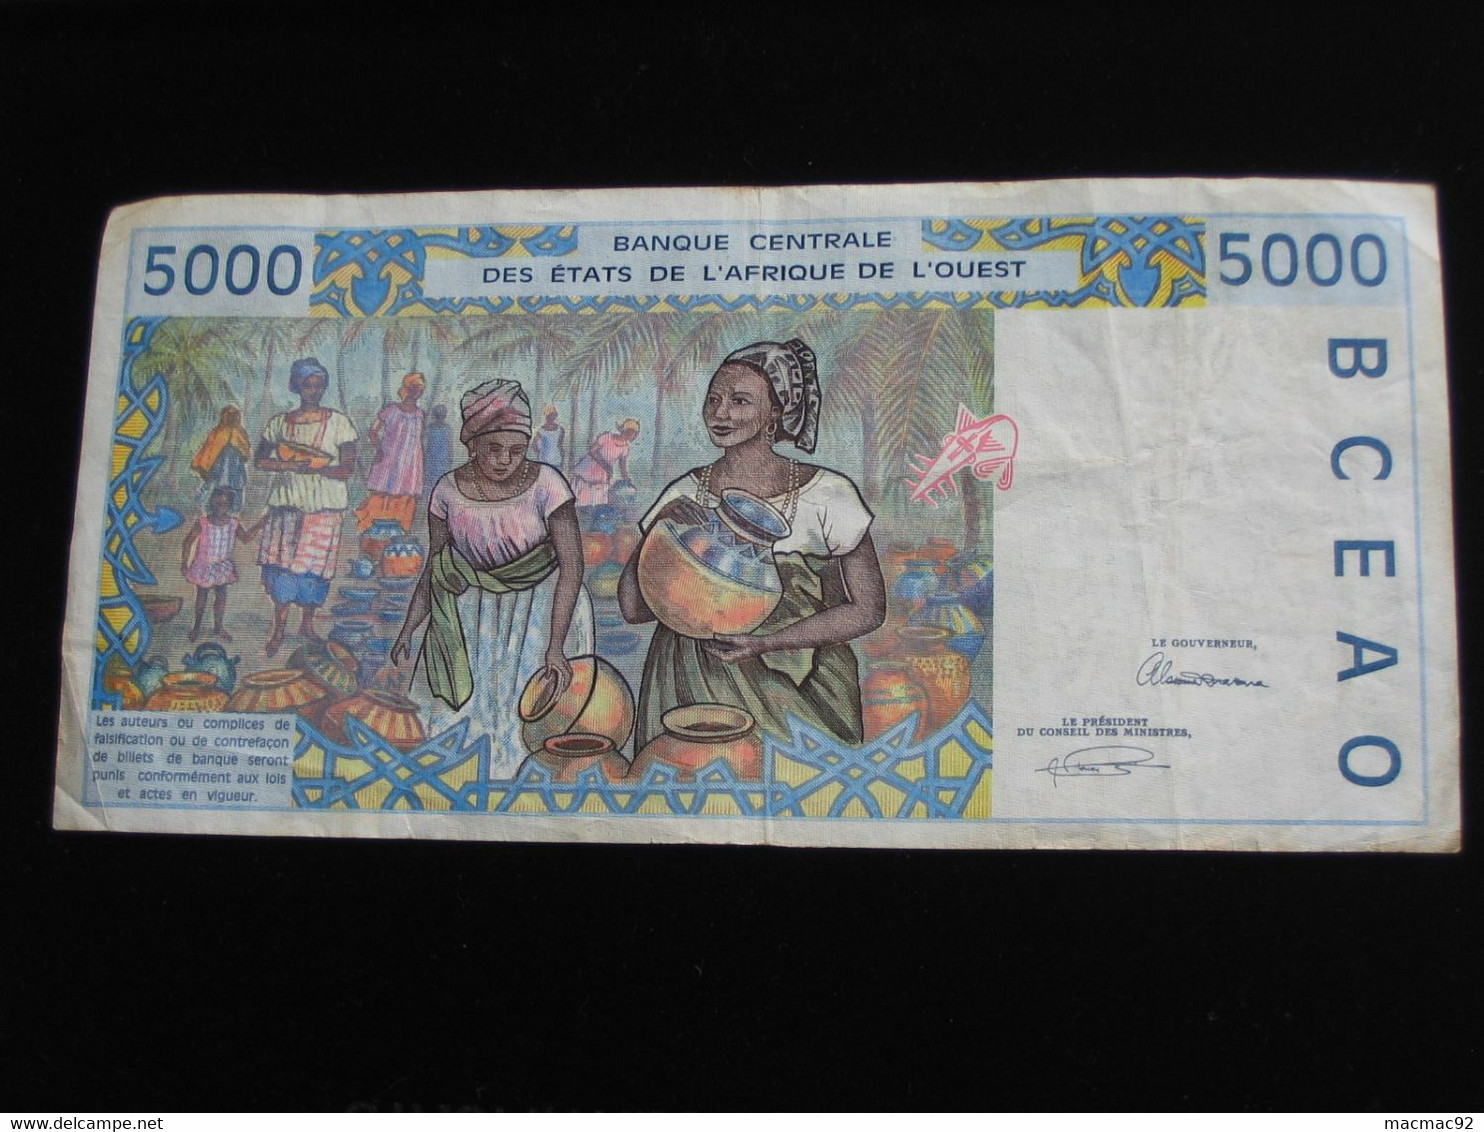 SENEGAL - 5000 Francs 1993 - Banque Centrale Des états De L'Afrique De L'ouest  **** EN  ACHAT IMMEDIAT  **** - Senegal